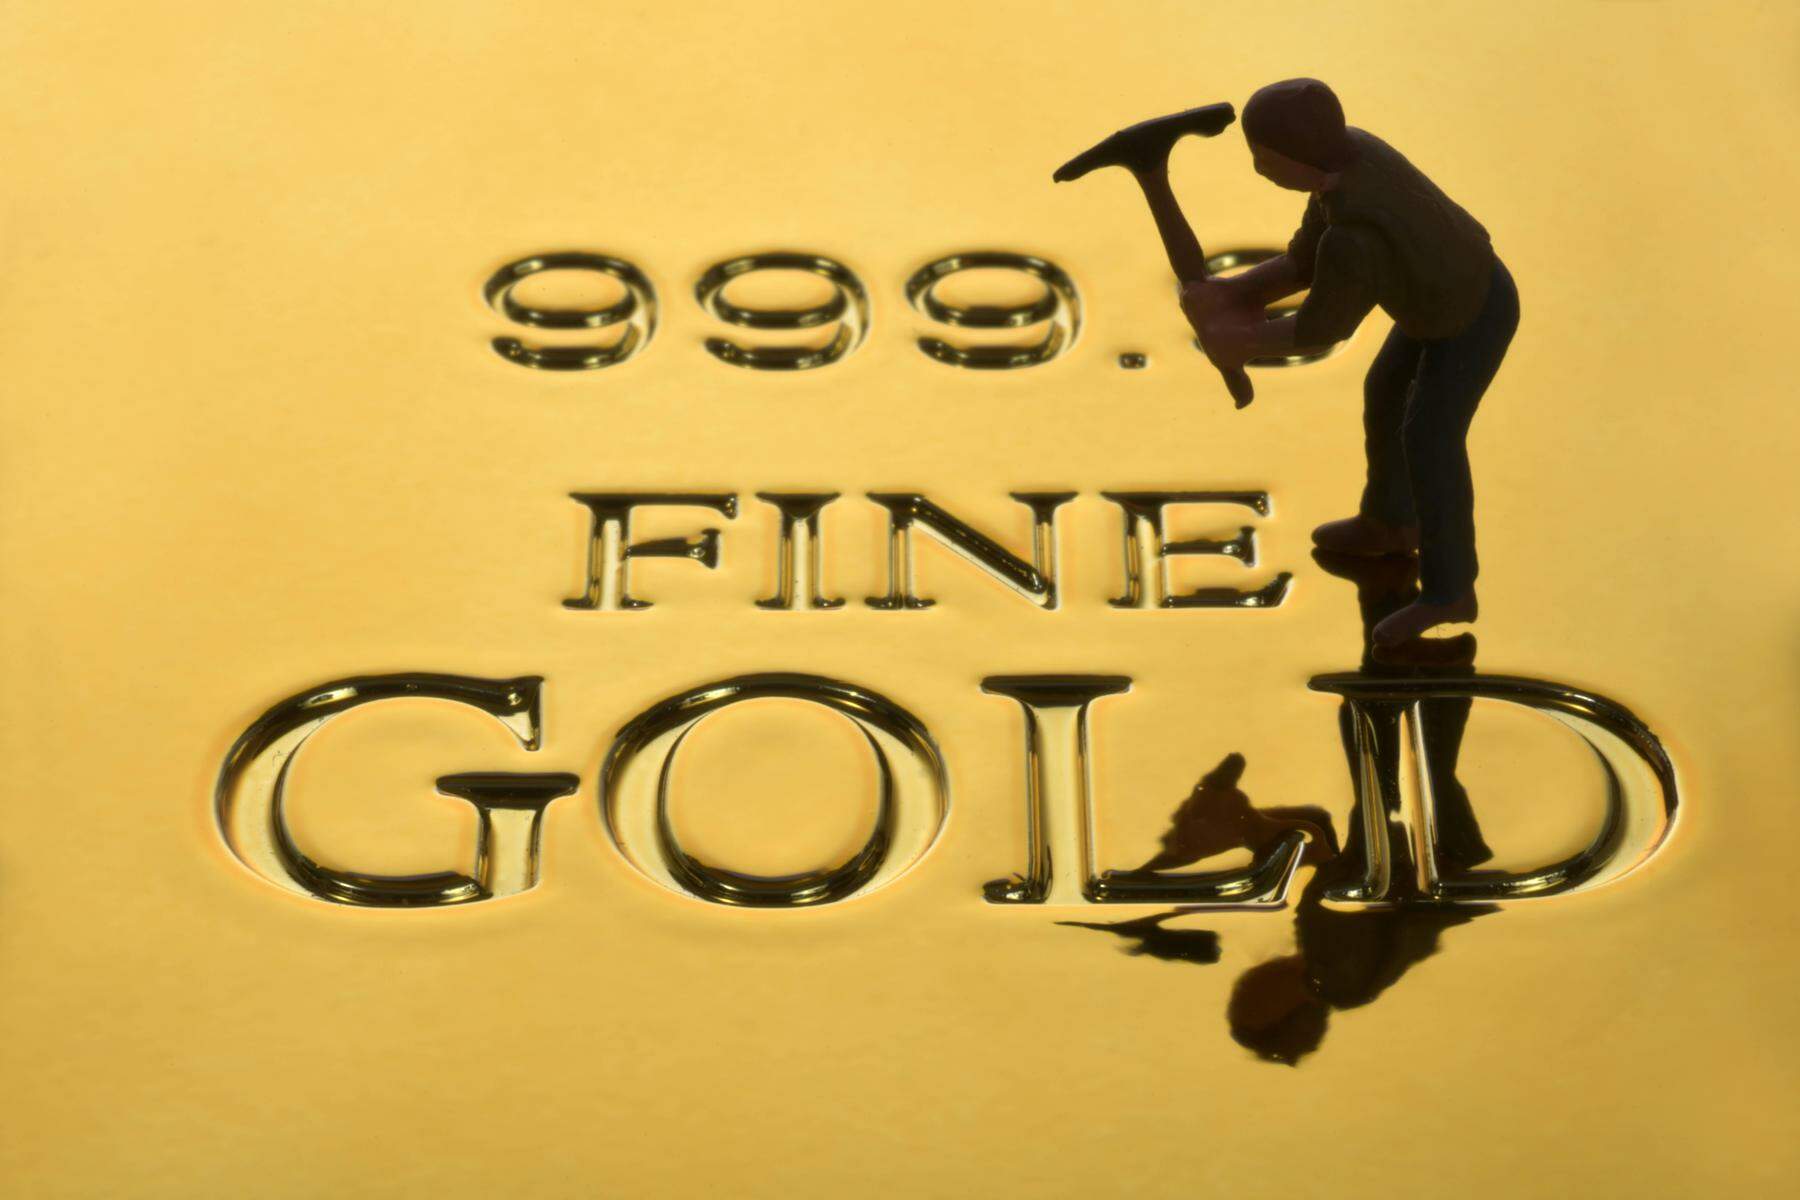 goldpreis-rekord, ölpreise steigen: sehr schlechte nachrichten für autofahrer, sehr gute für goldbesitzer